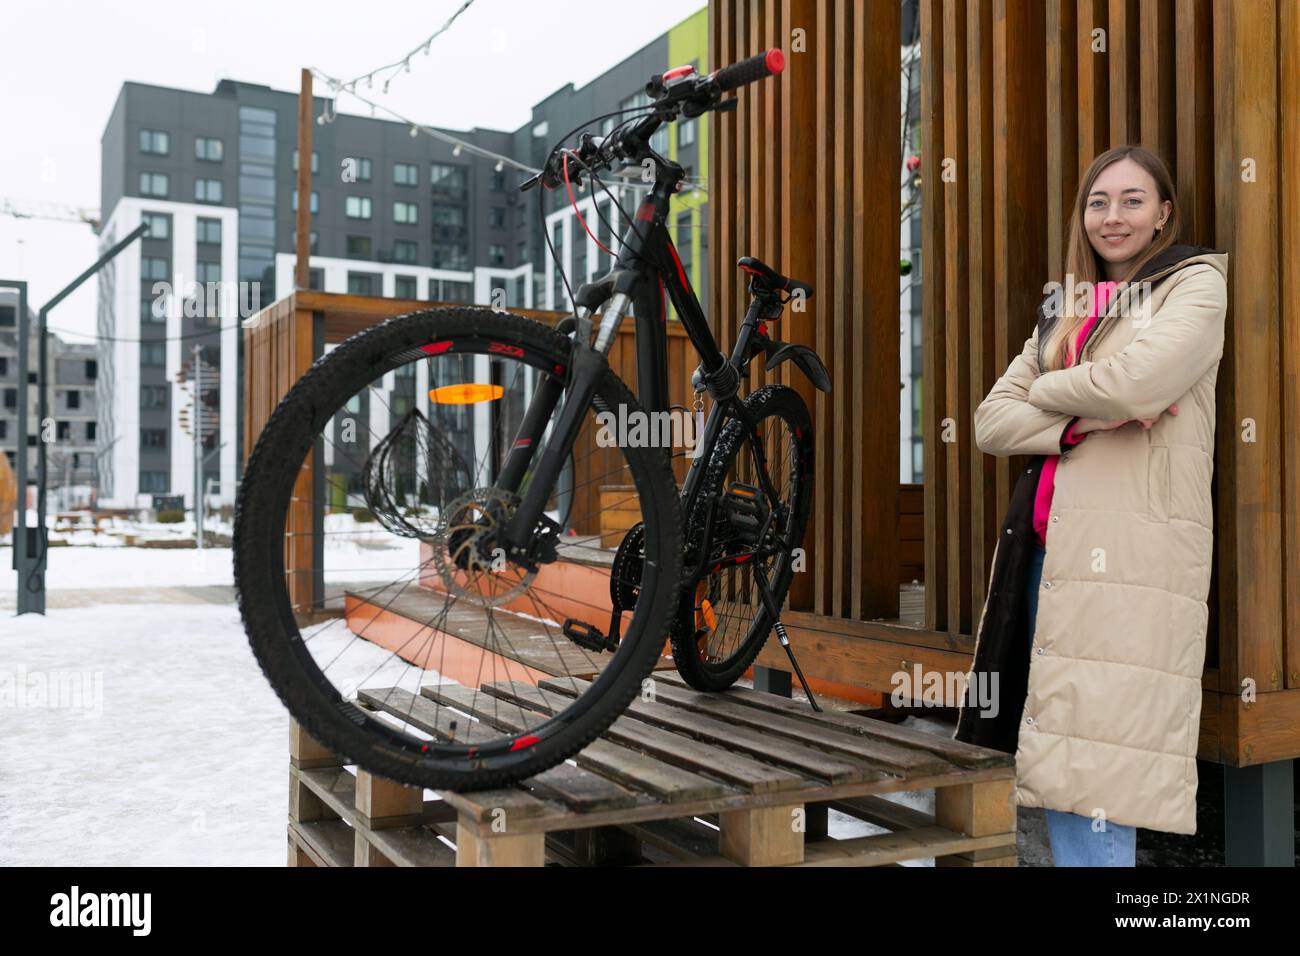 Frau, die neben dem Fahrrad auf Holzplattform steht Stockfoto